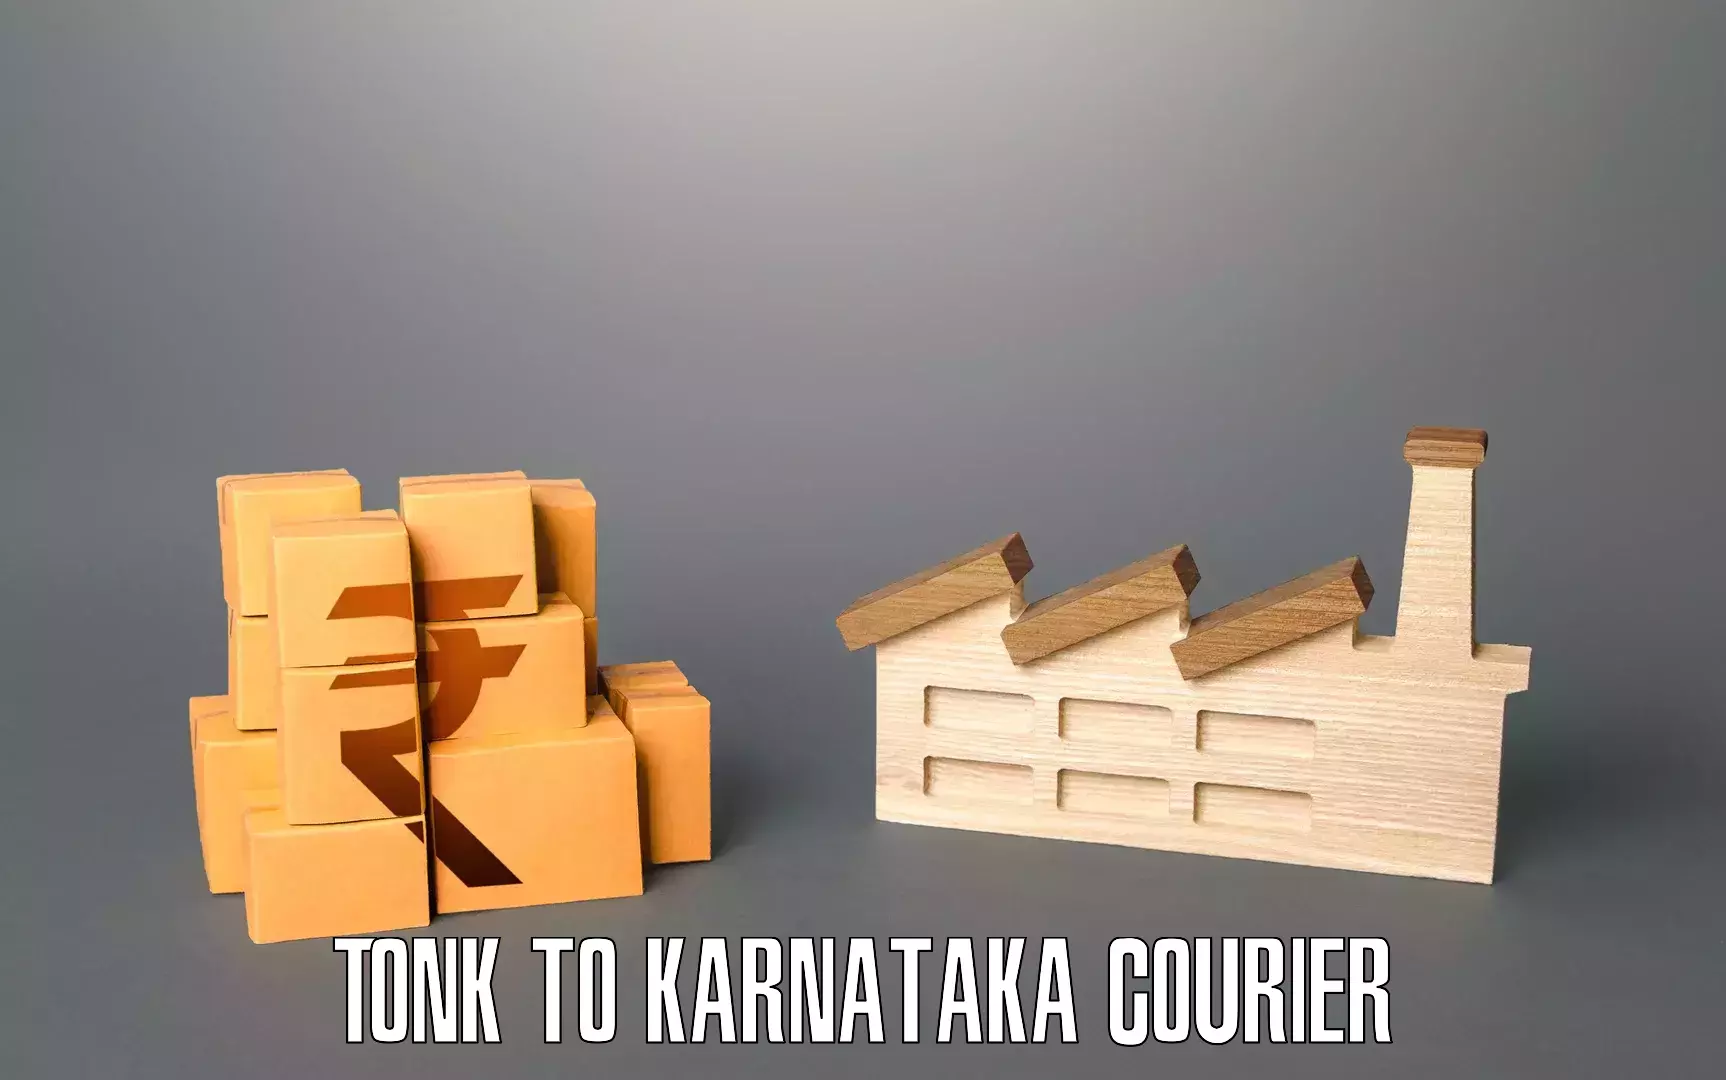 Furniture transport experts Tonk to Banavara